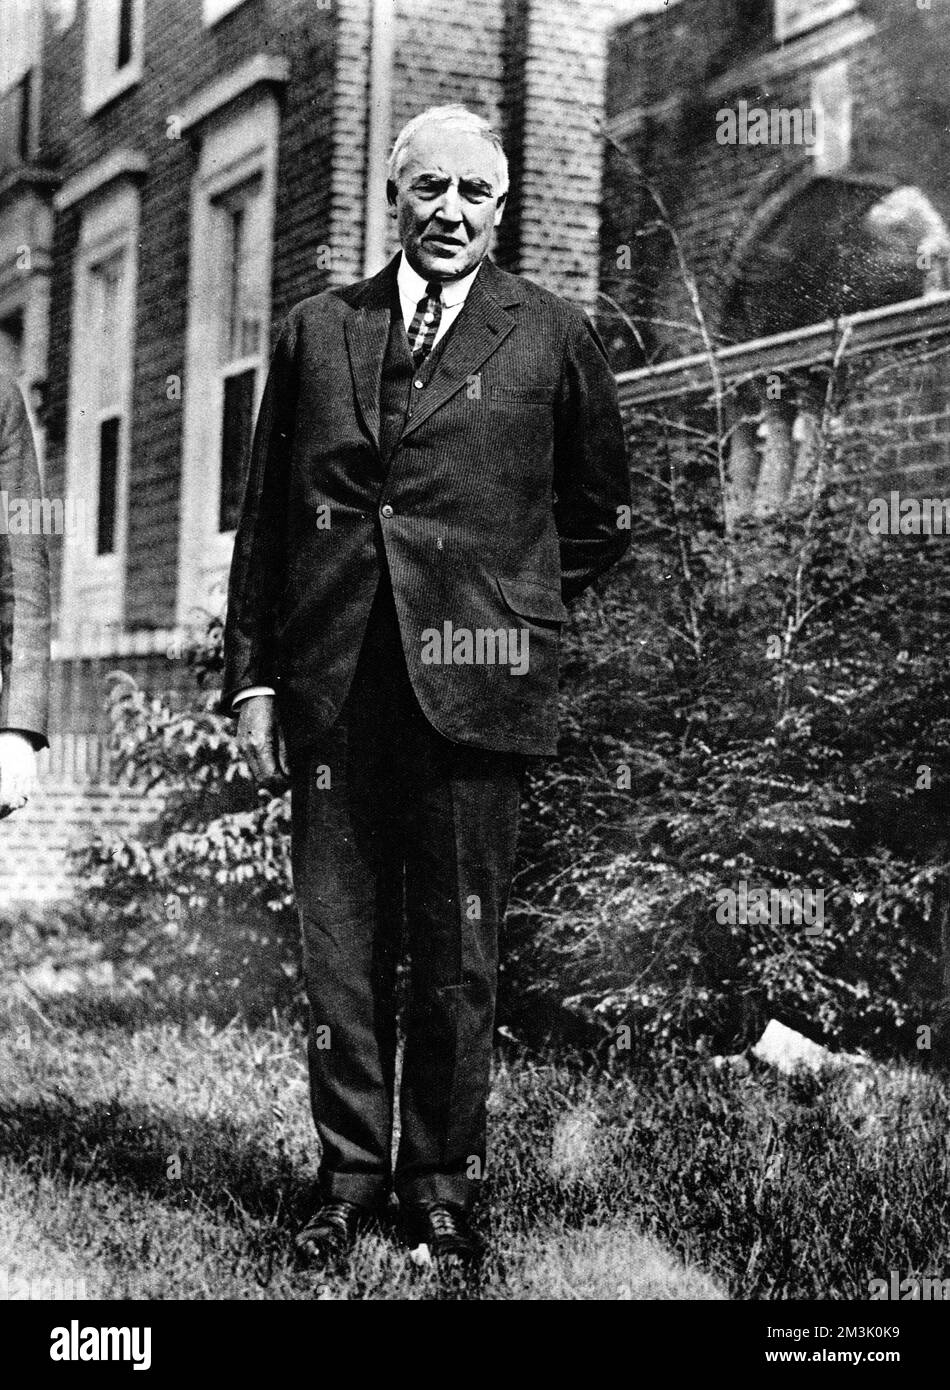 Warren G. Harding (1865-1923), republikanischer Senator für Ohio und neunundzwanzigster Präsident der Vereinigten Staaten von Amerika (1921-1923), Bild 1920. 1920 Stockfoto